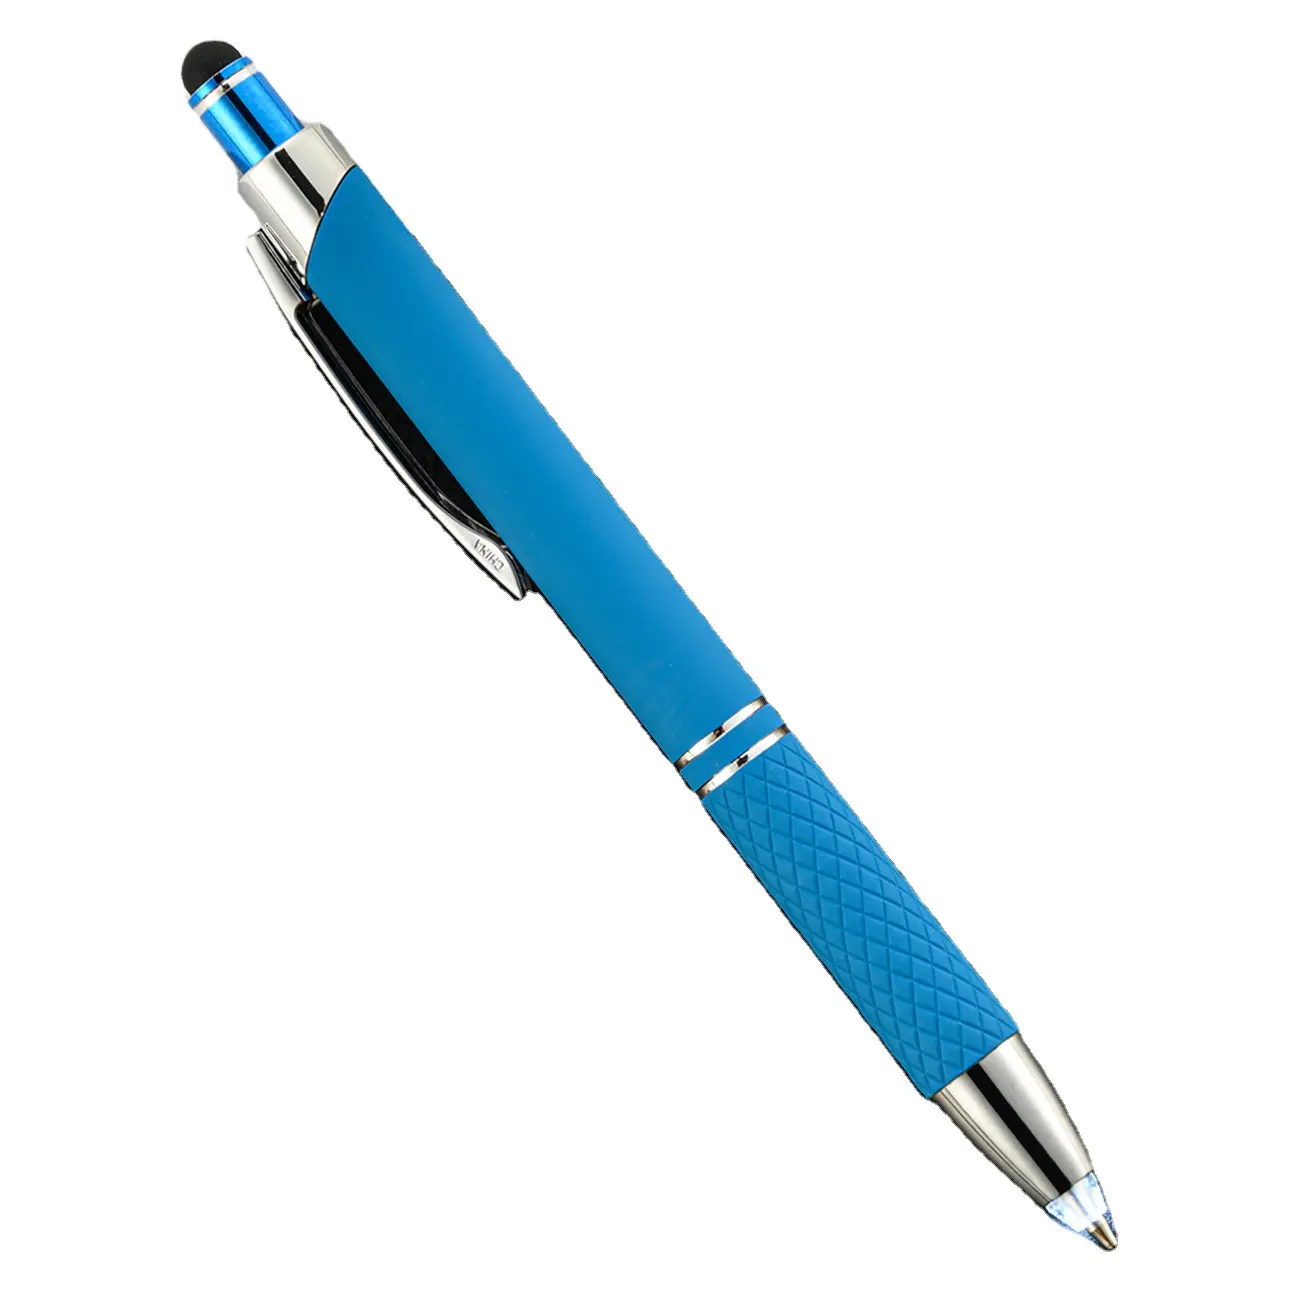 Lighted Tip Pen Flashlight Writing Ballpoint Pens LED Penlight Light Up Pen with Bright White Light for Writing in the Dark